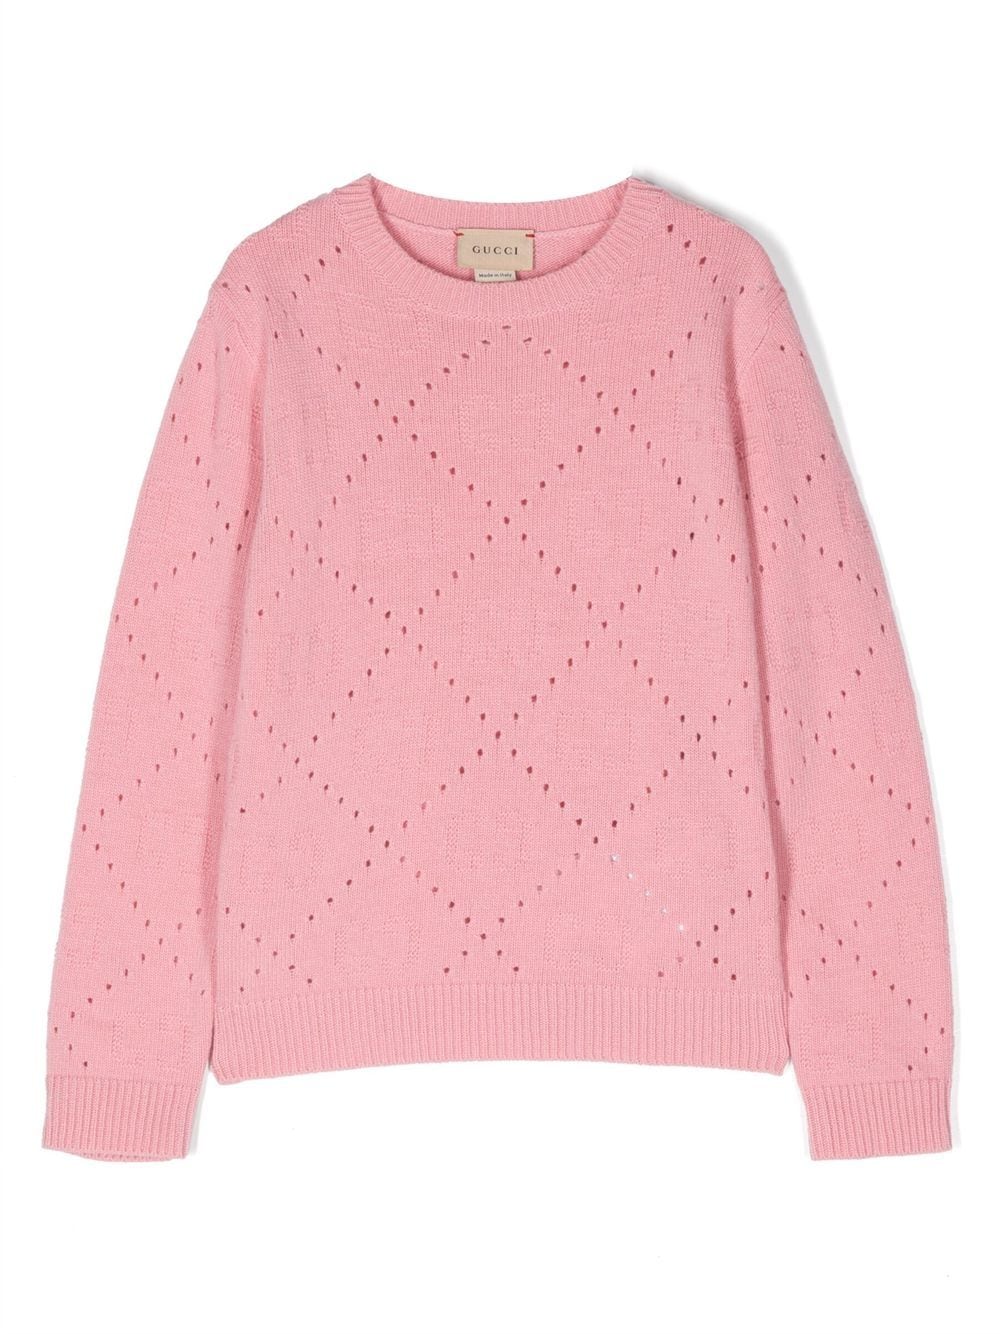 Gucci Kids' Open-knit Wool Jumper In Pink